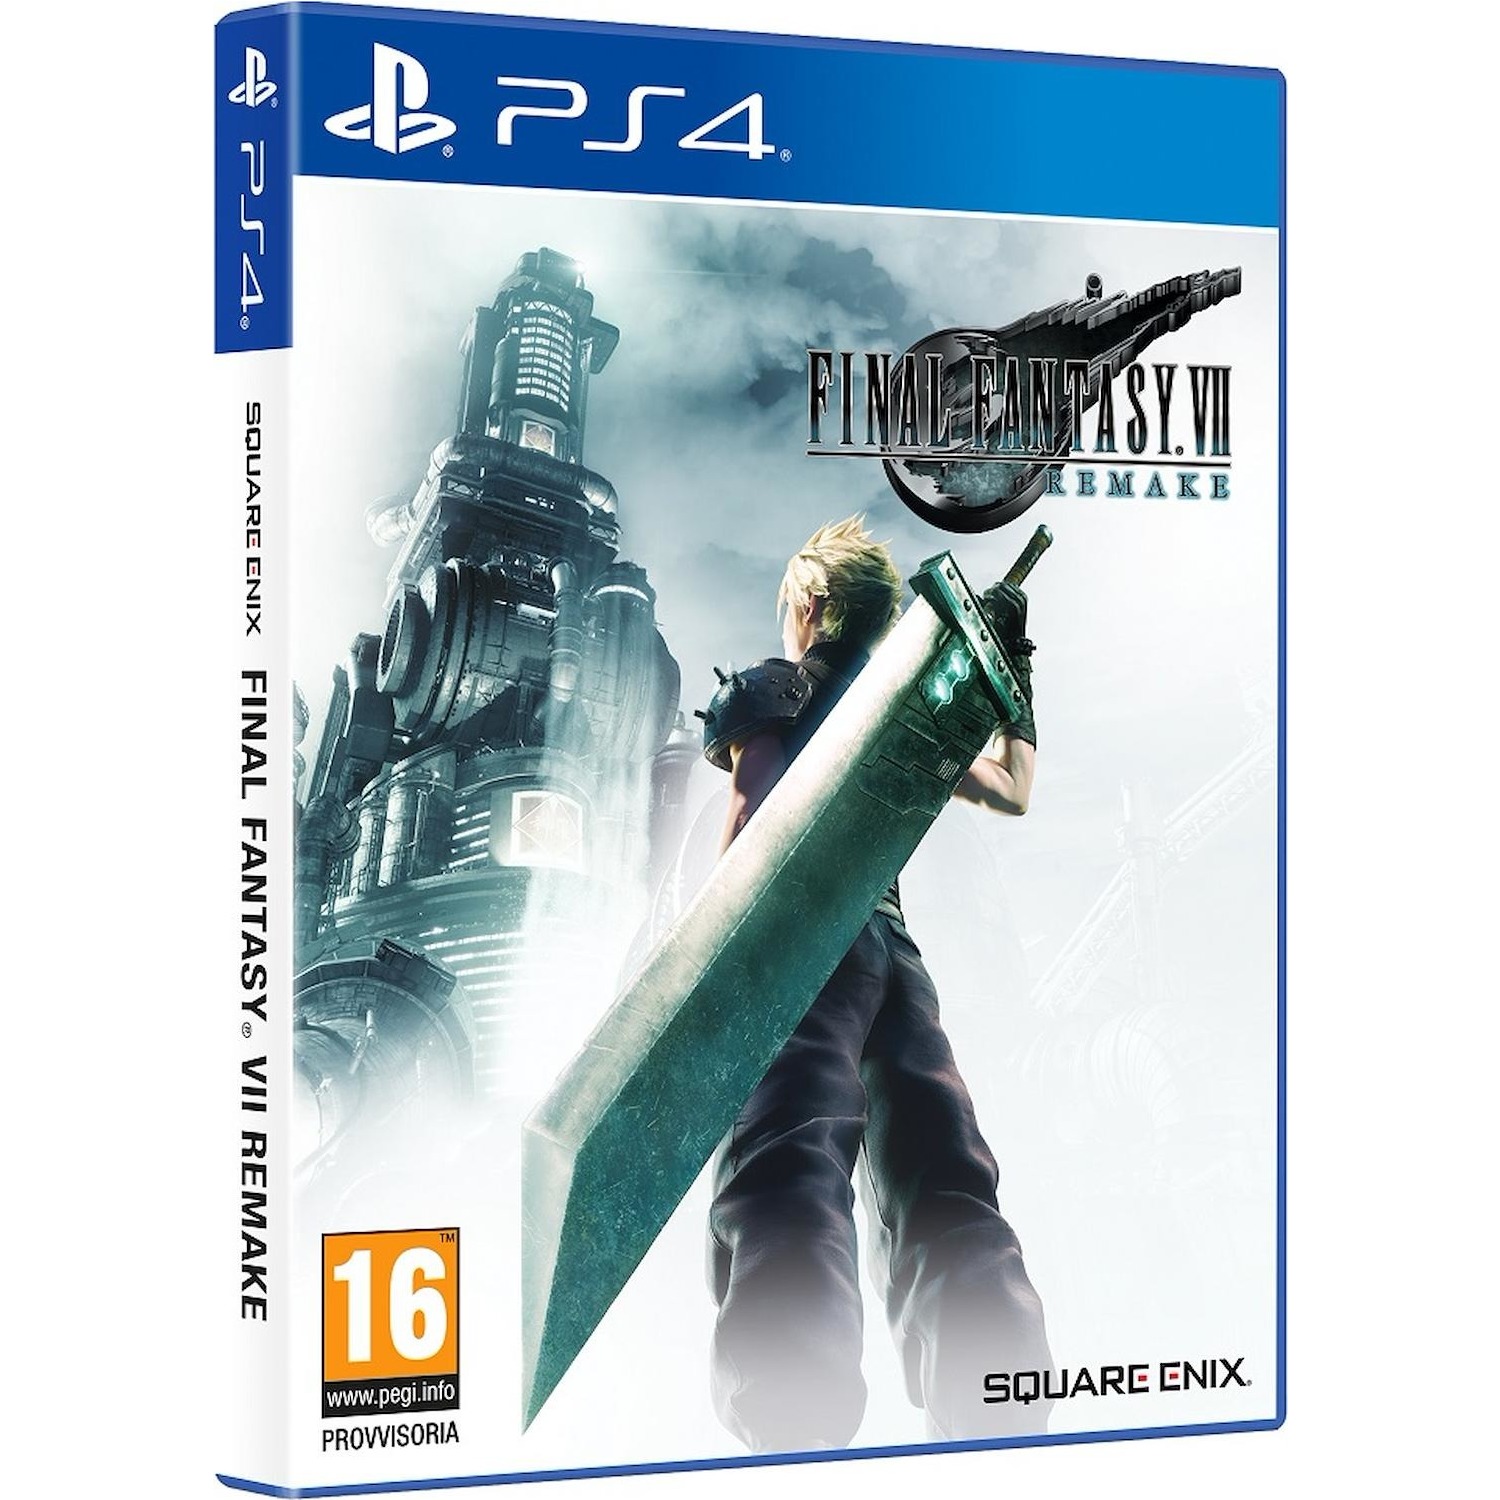 Immagine per Gioco PS4 Final Fantasy VII remake da DIMOStore